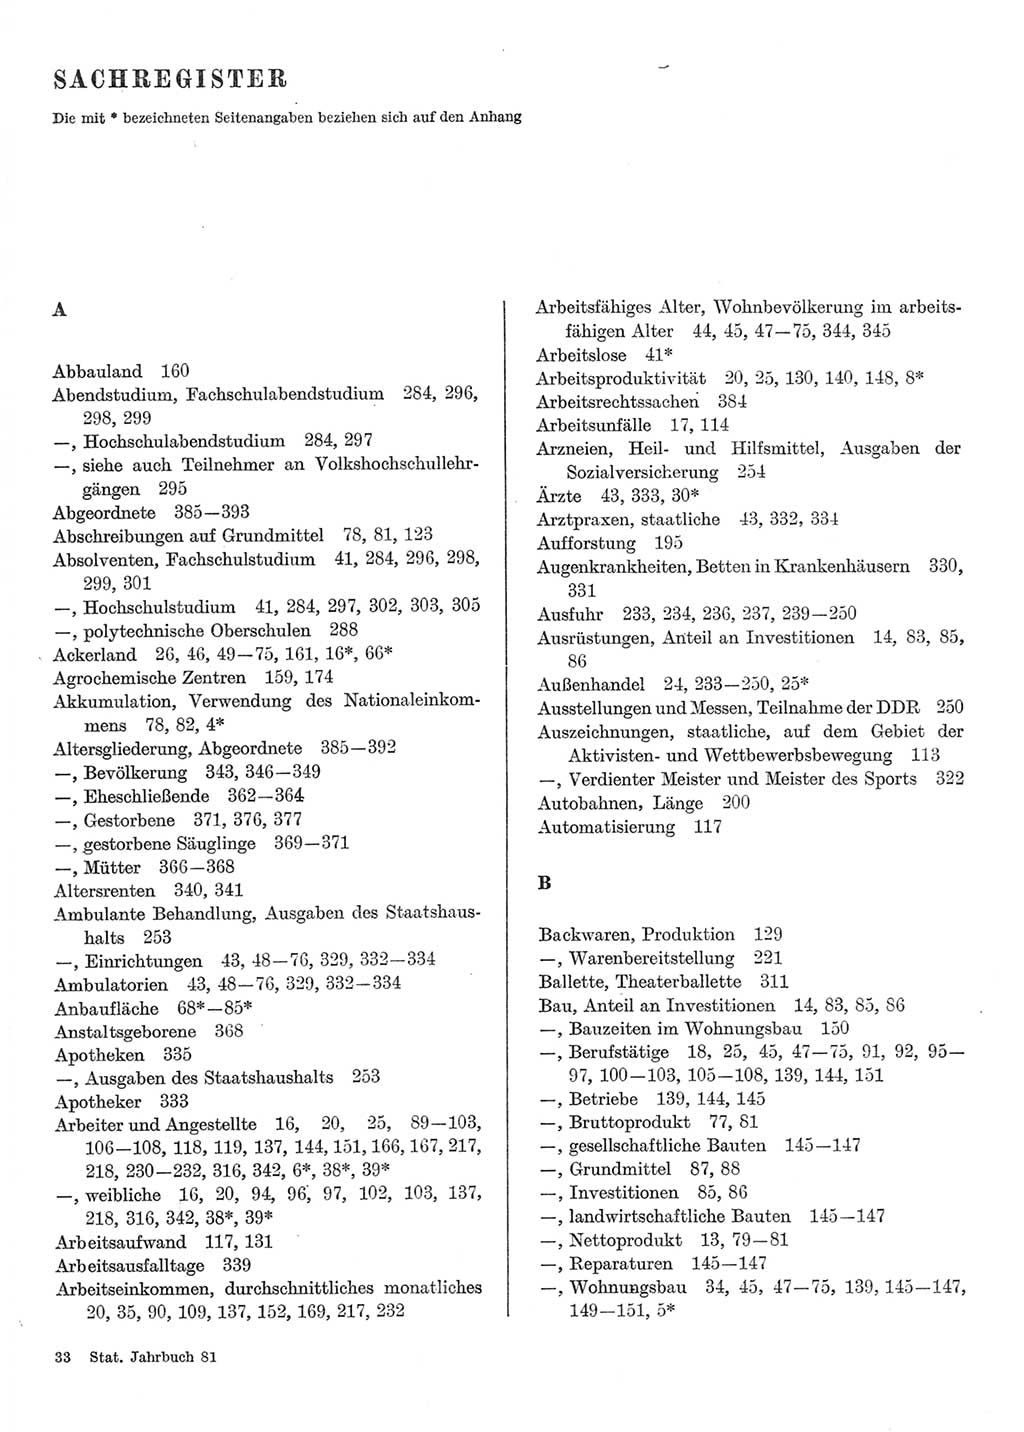 Statistisches Jahrbuch der Deutschen Demokratischen Republik (DDR) 1981, Seite 1 (Stat. Jb. DDR 1981, S. 1)